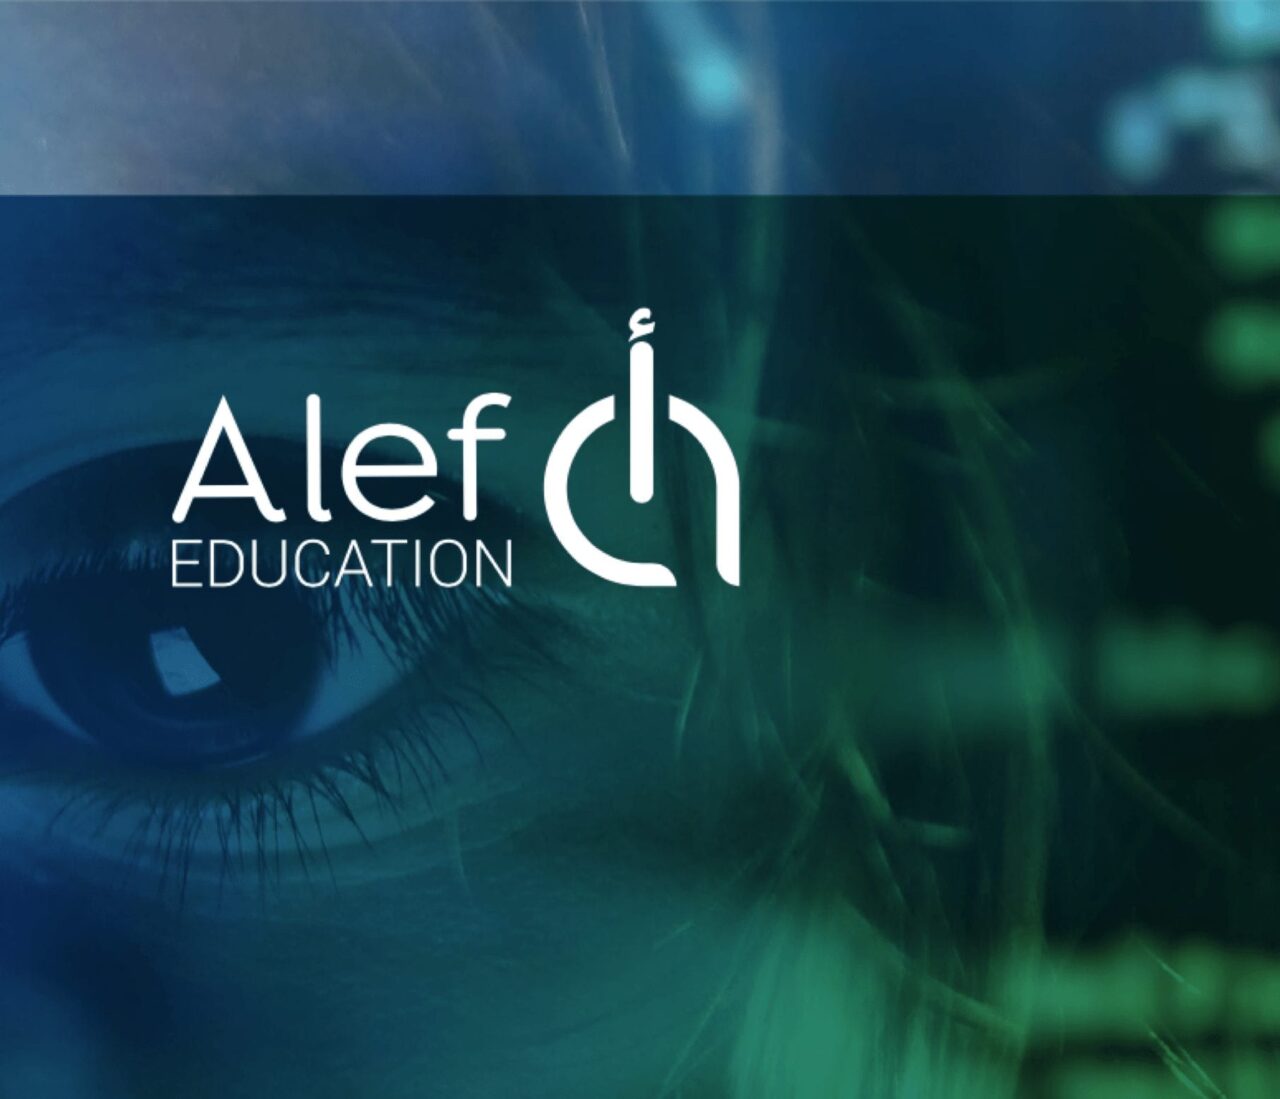 alef education chooses branding agency skyne